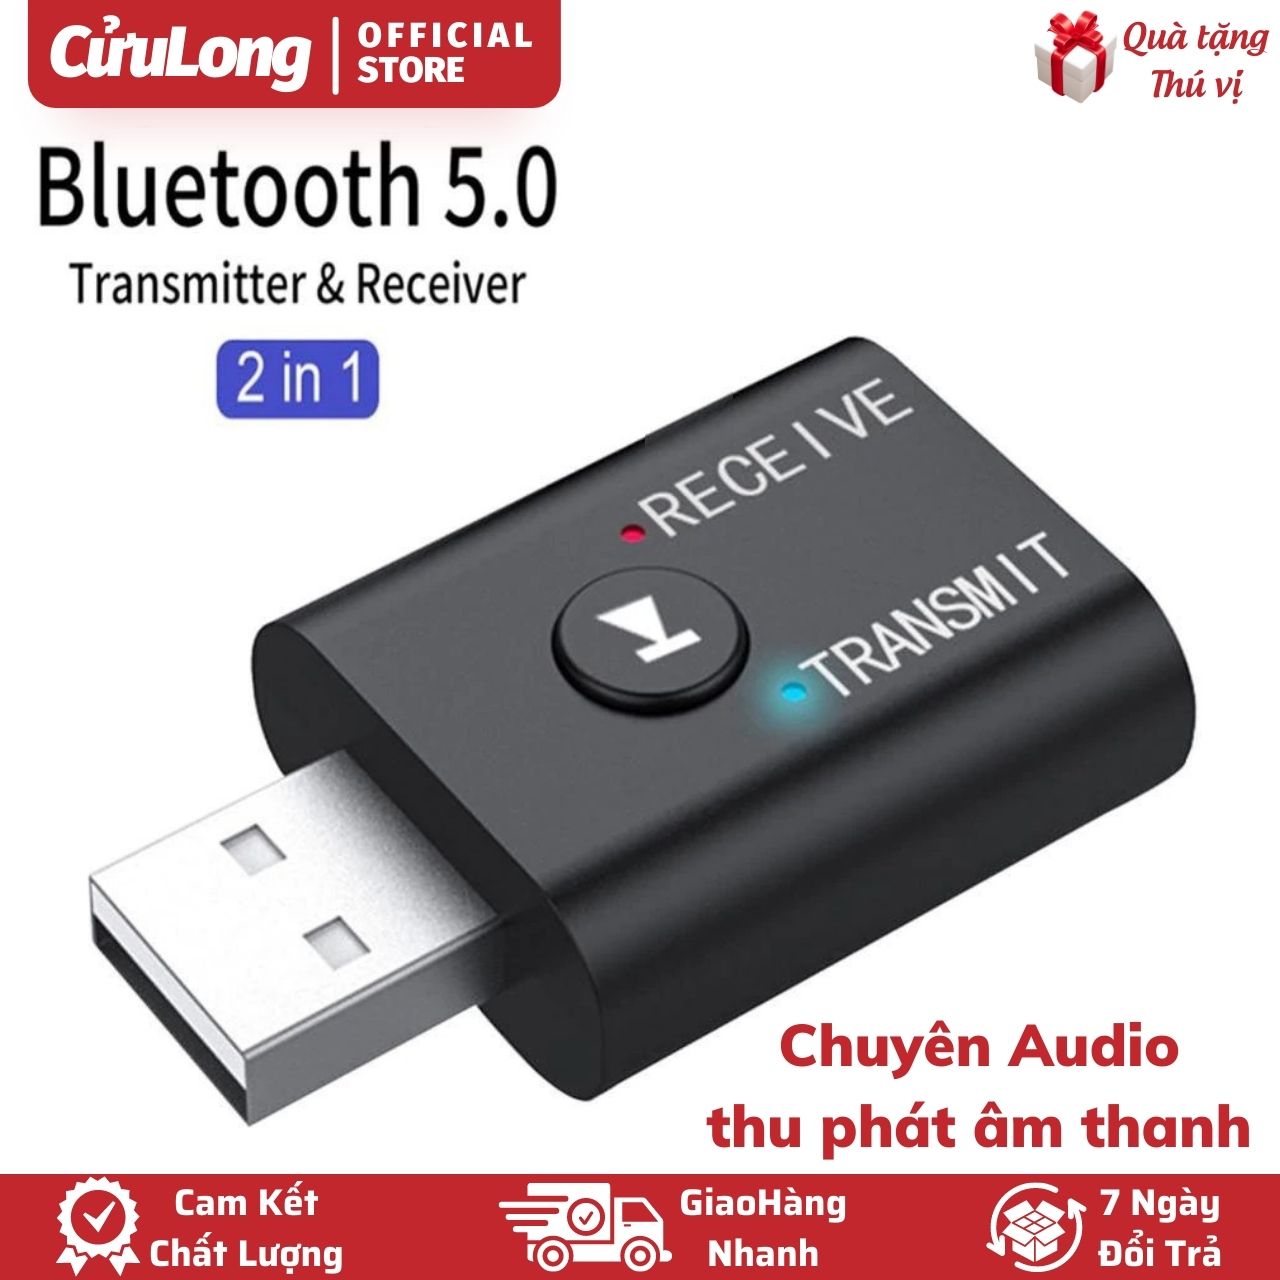 USB Audio Bluetooth 5.0 Thu Phát Truyền Âm Thanh Không Dây Cho Amply Karaoke Tivi Ô tô Xe Hơi Loa Laptop Máy Tính PC CuuLongStore